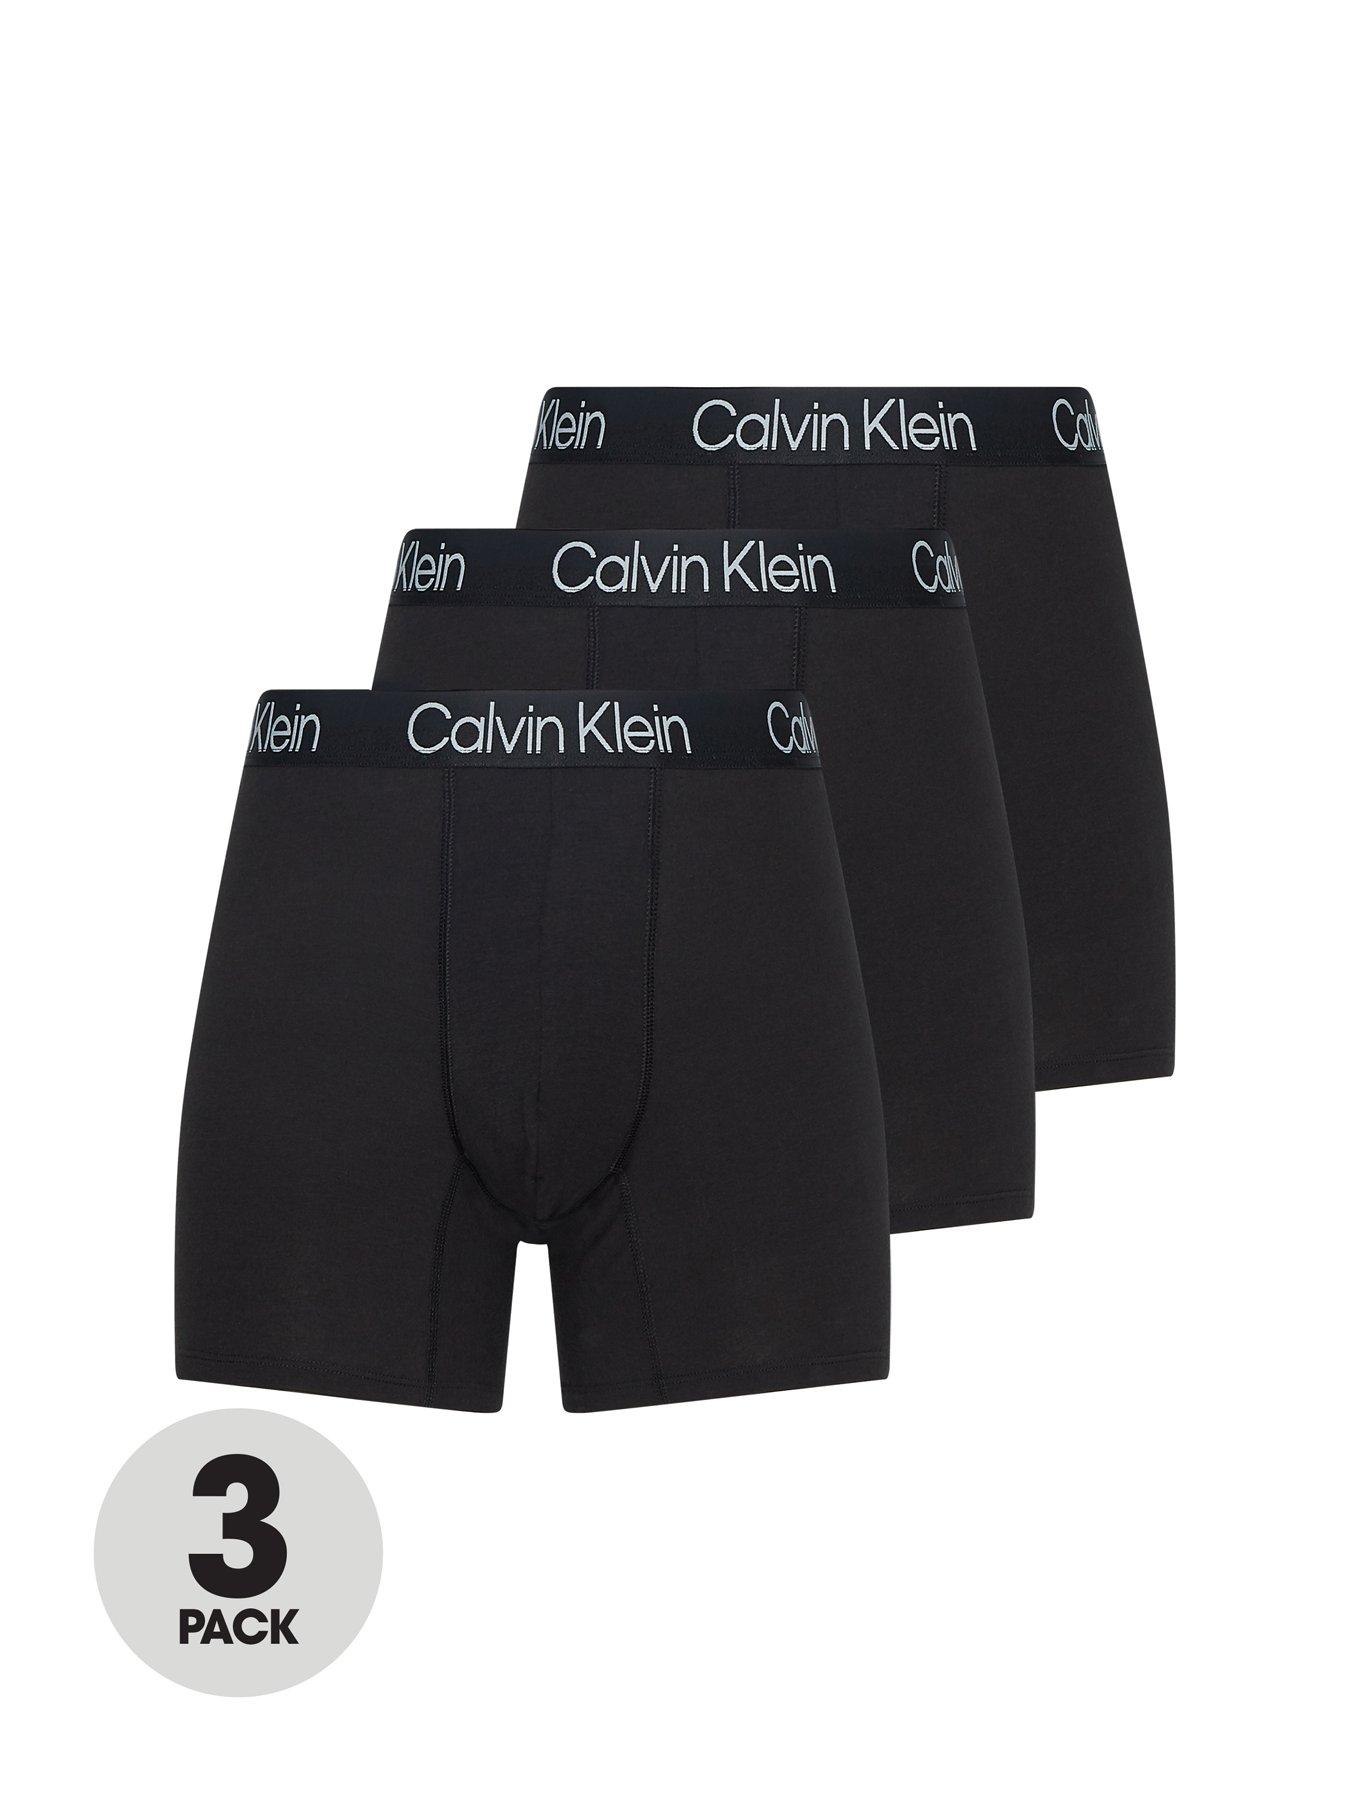 Calvin Klein 3 Pack Boxer Briefs Modern Structure - Black, Black, Size S, Men